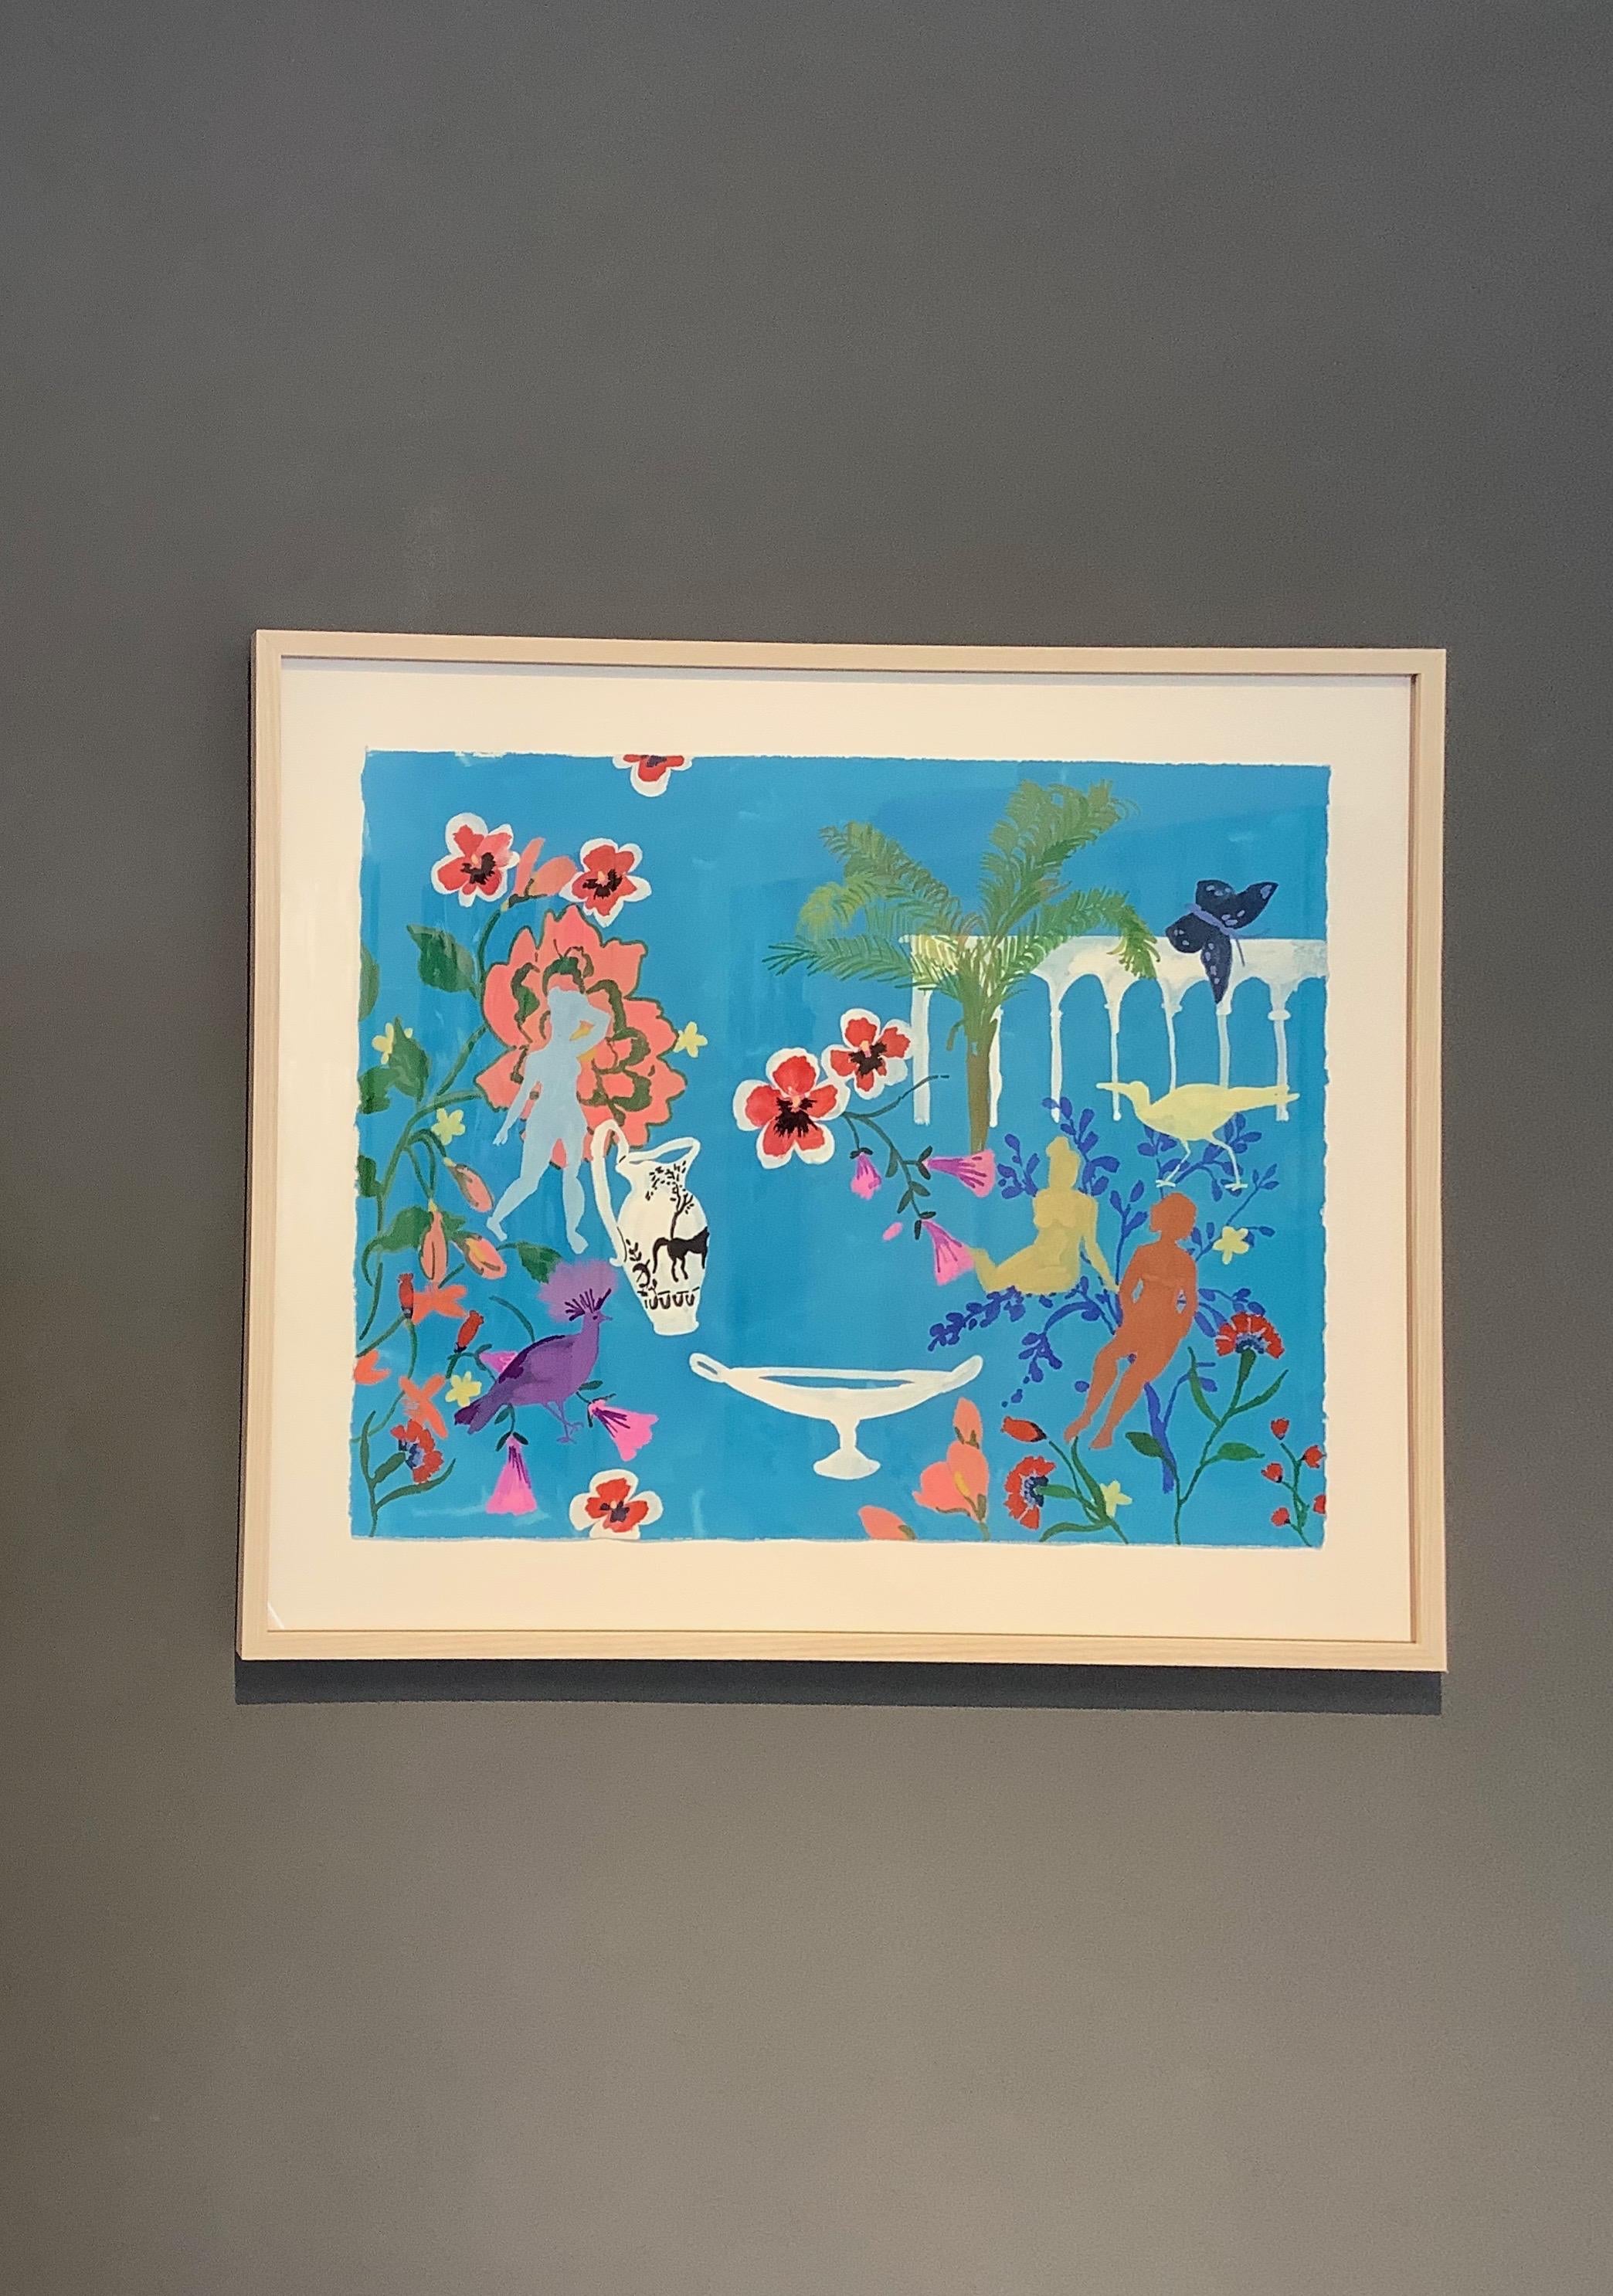 Kronenvogel, figuratives Landschaftsgemälde, Frauen, Vögel, Blumen, Palmen, Blau – Painting von Melanie Parke